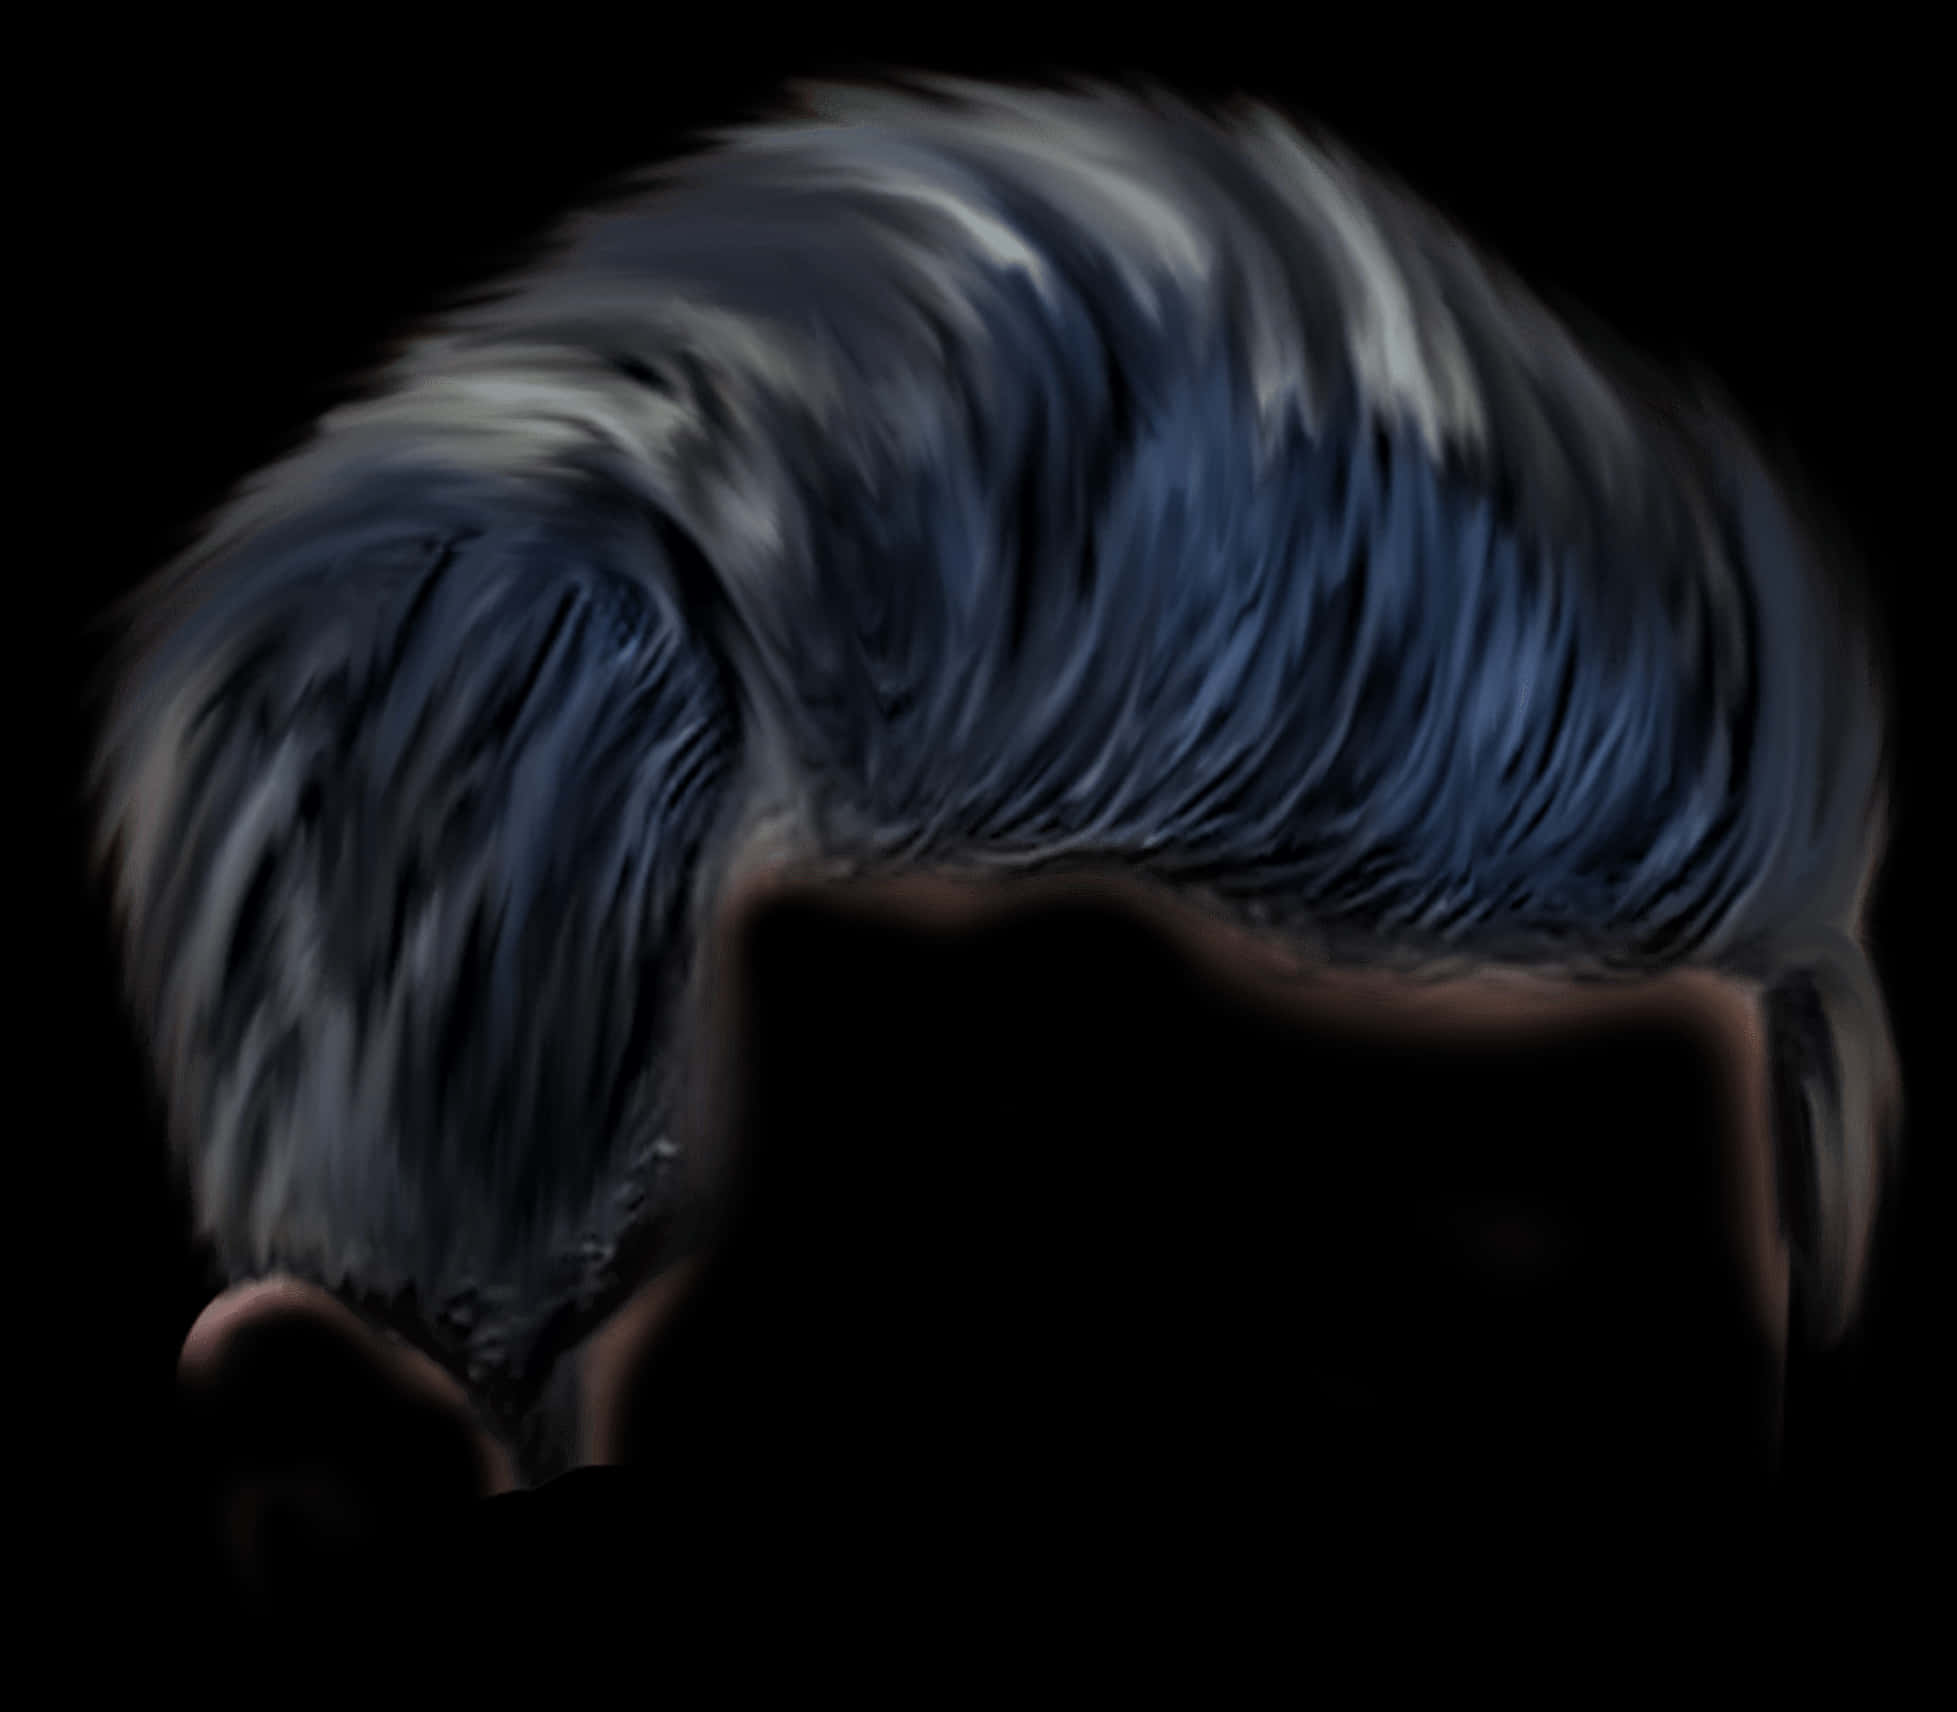 Swept Back Blue Hair Digital Artwork PNG